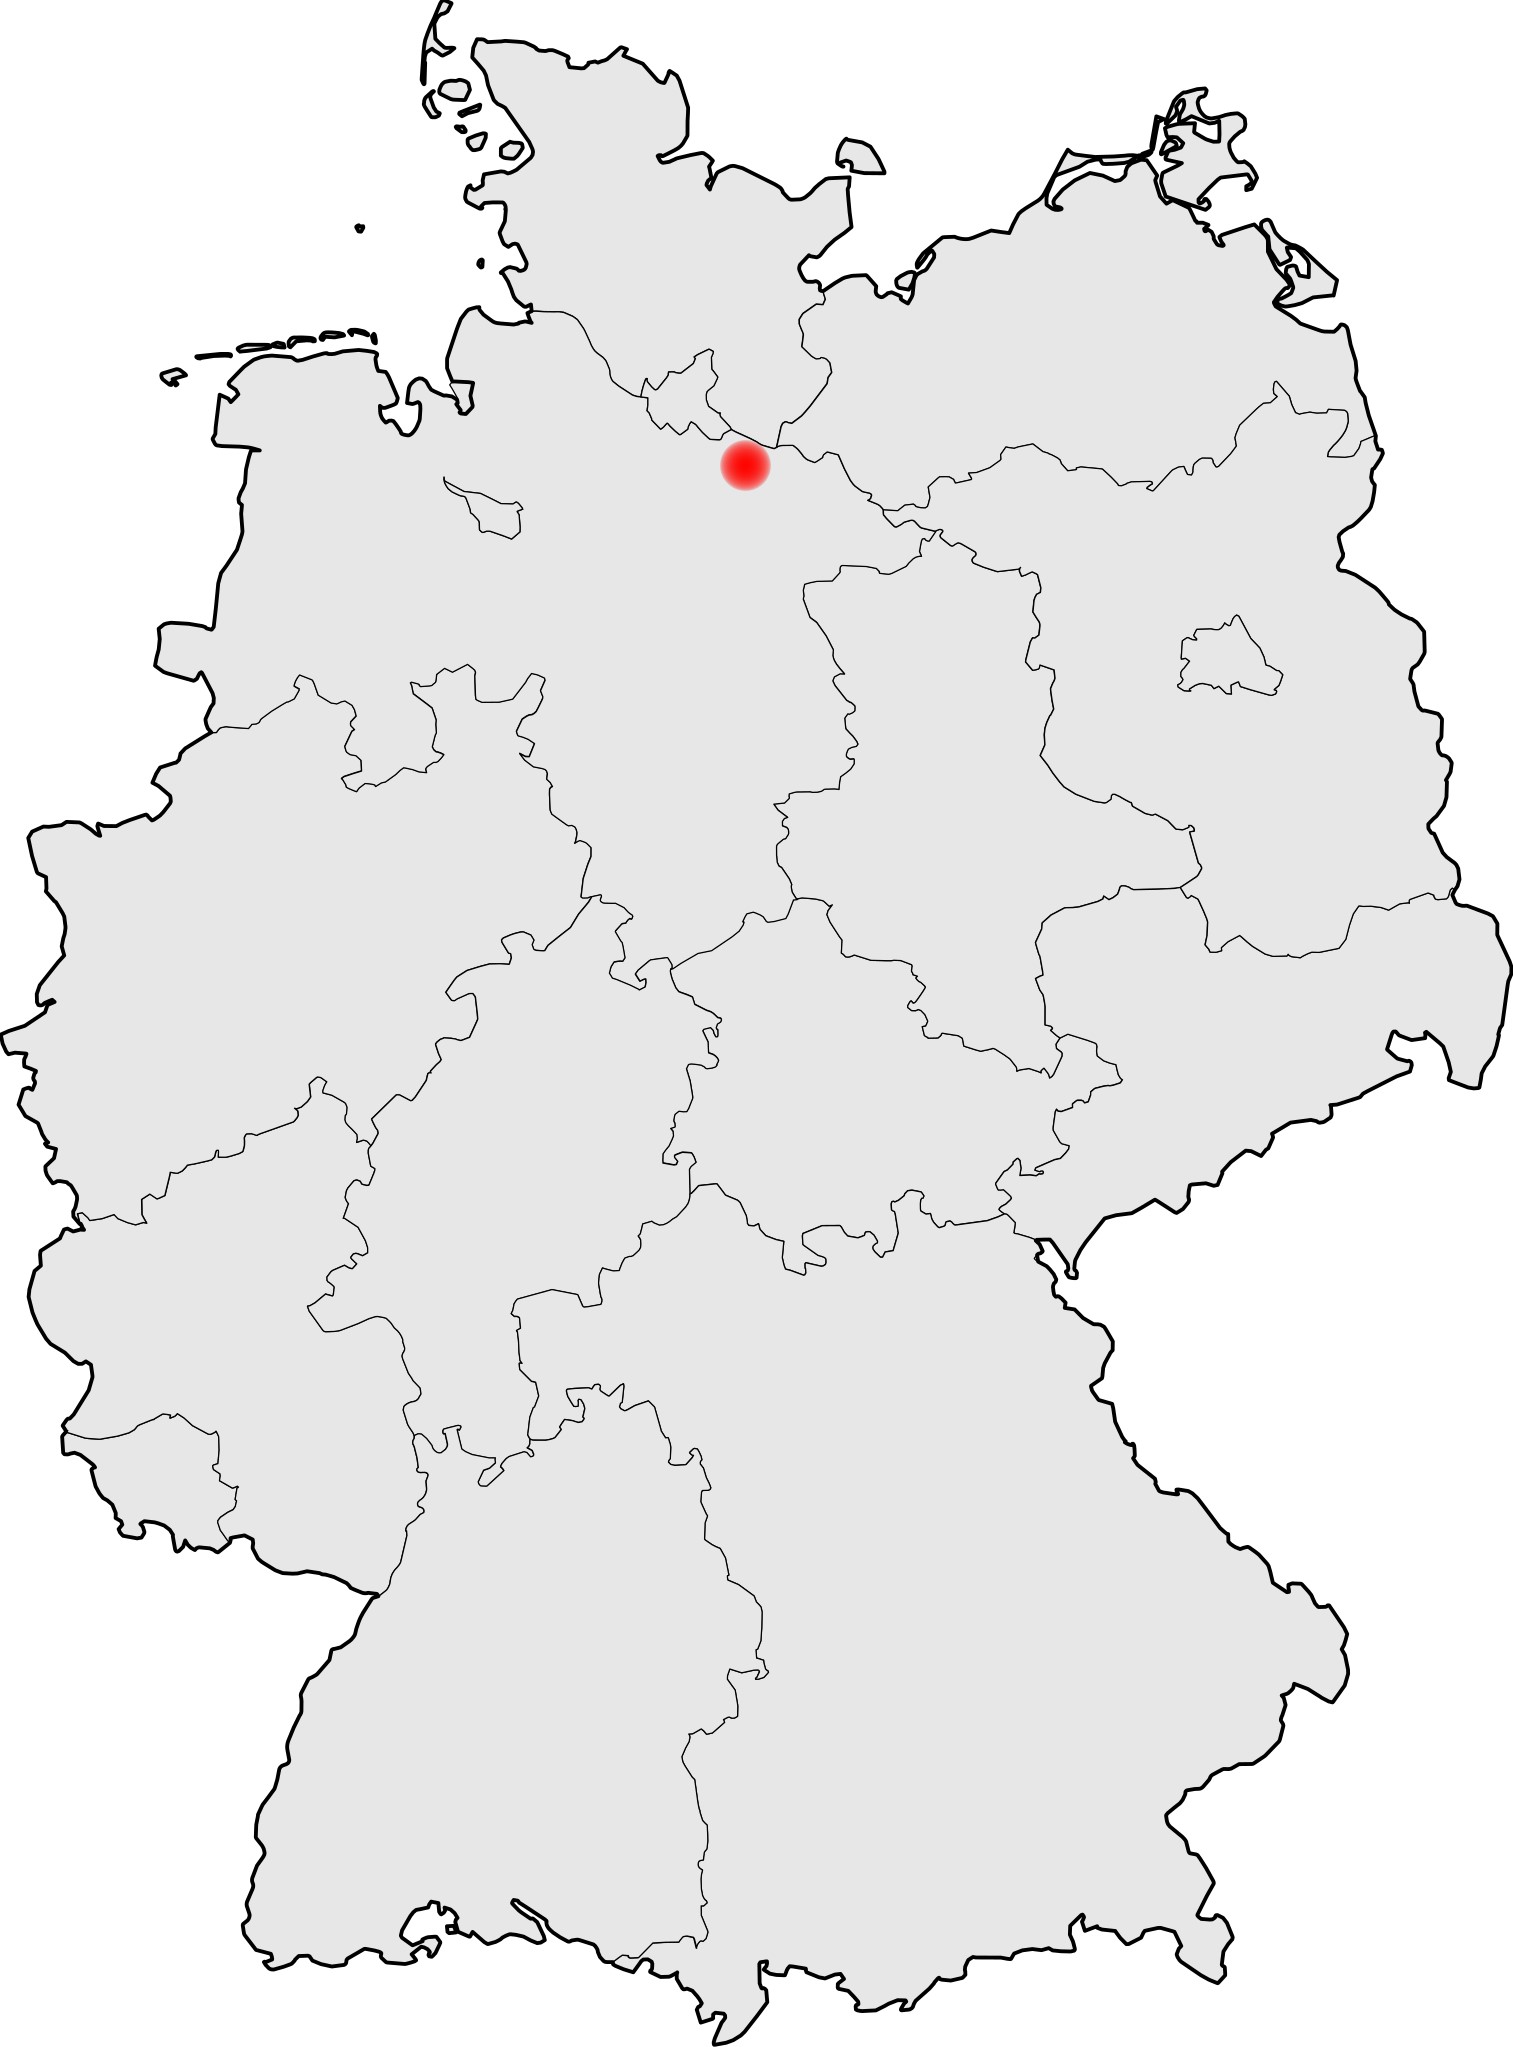 Adendorf